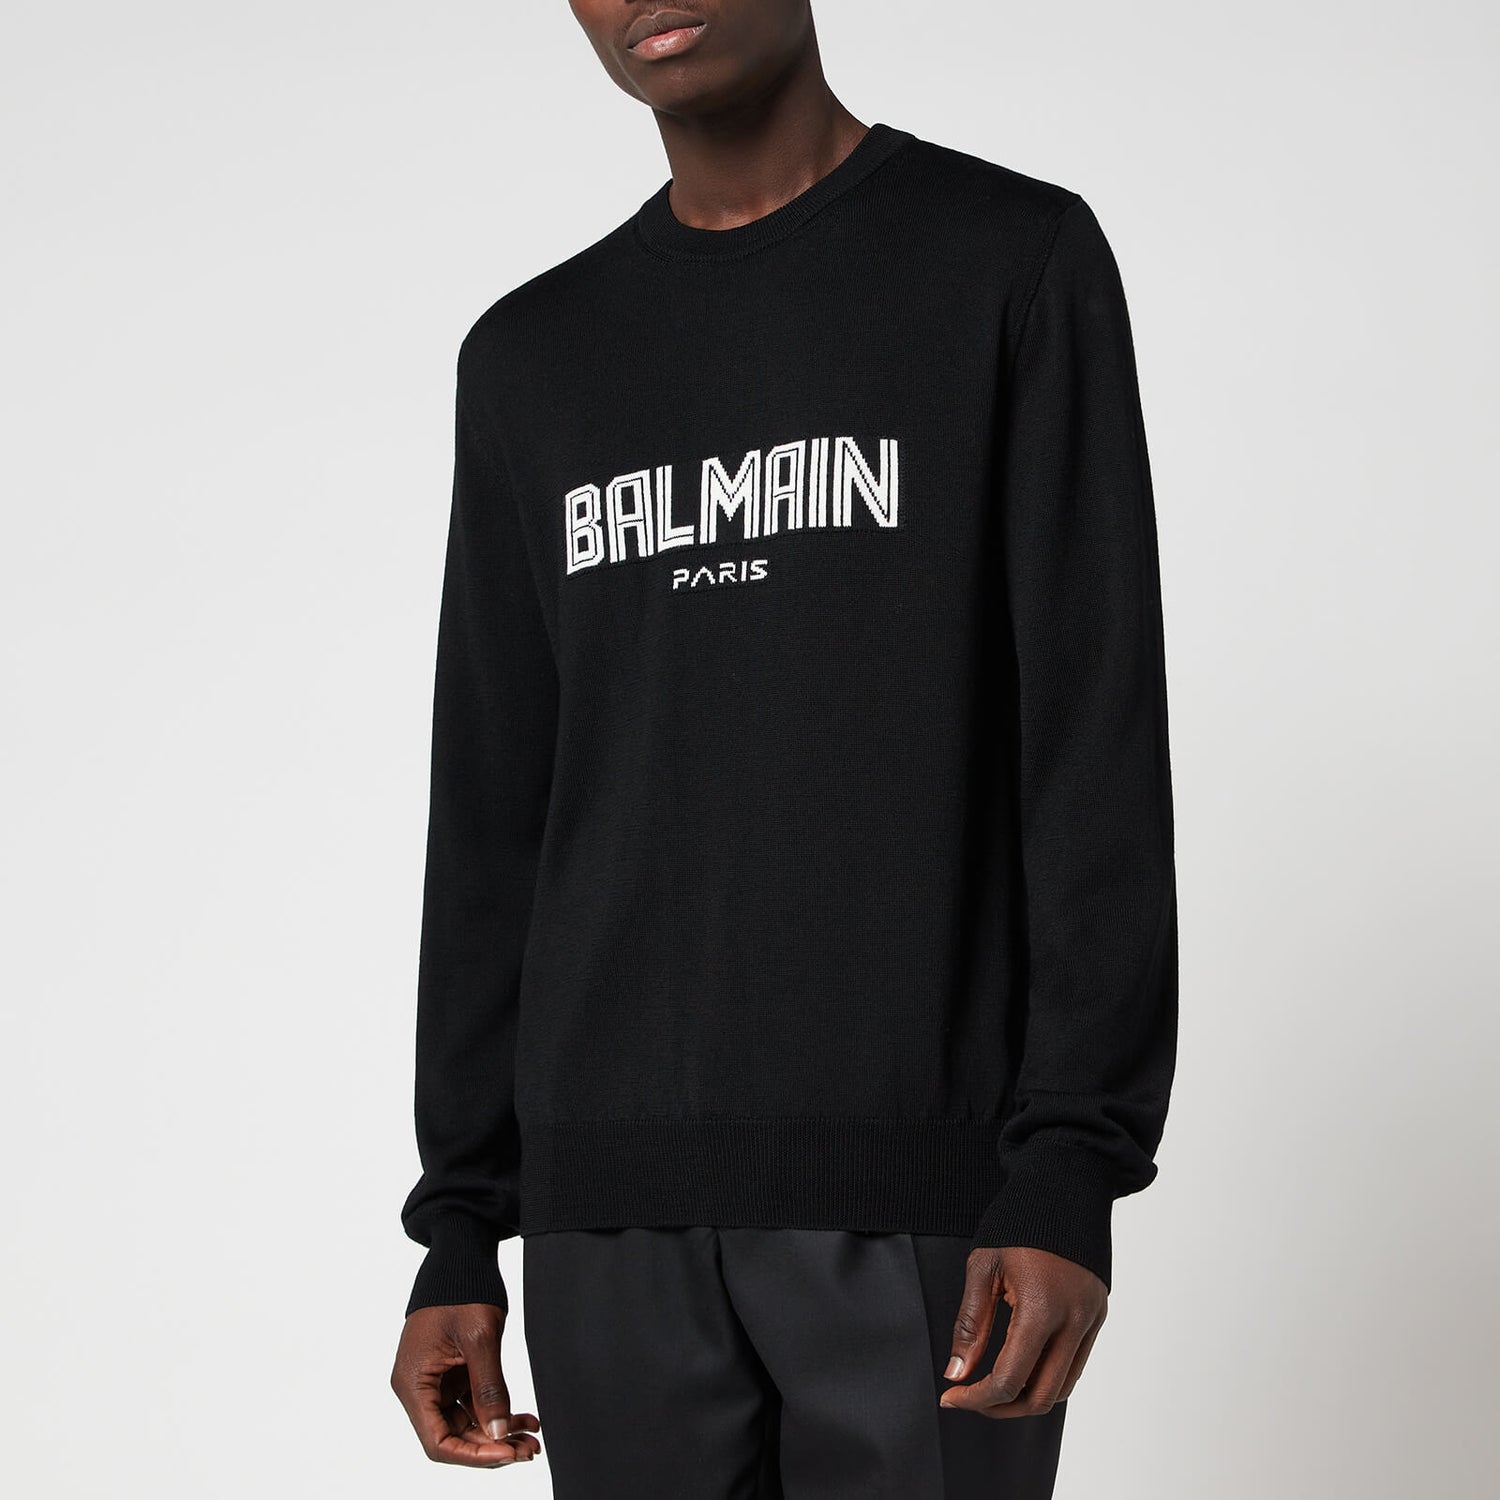 Balmain Men's Knitted Jumper - Black/White - L